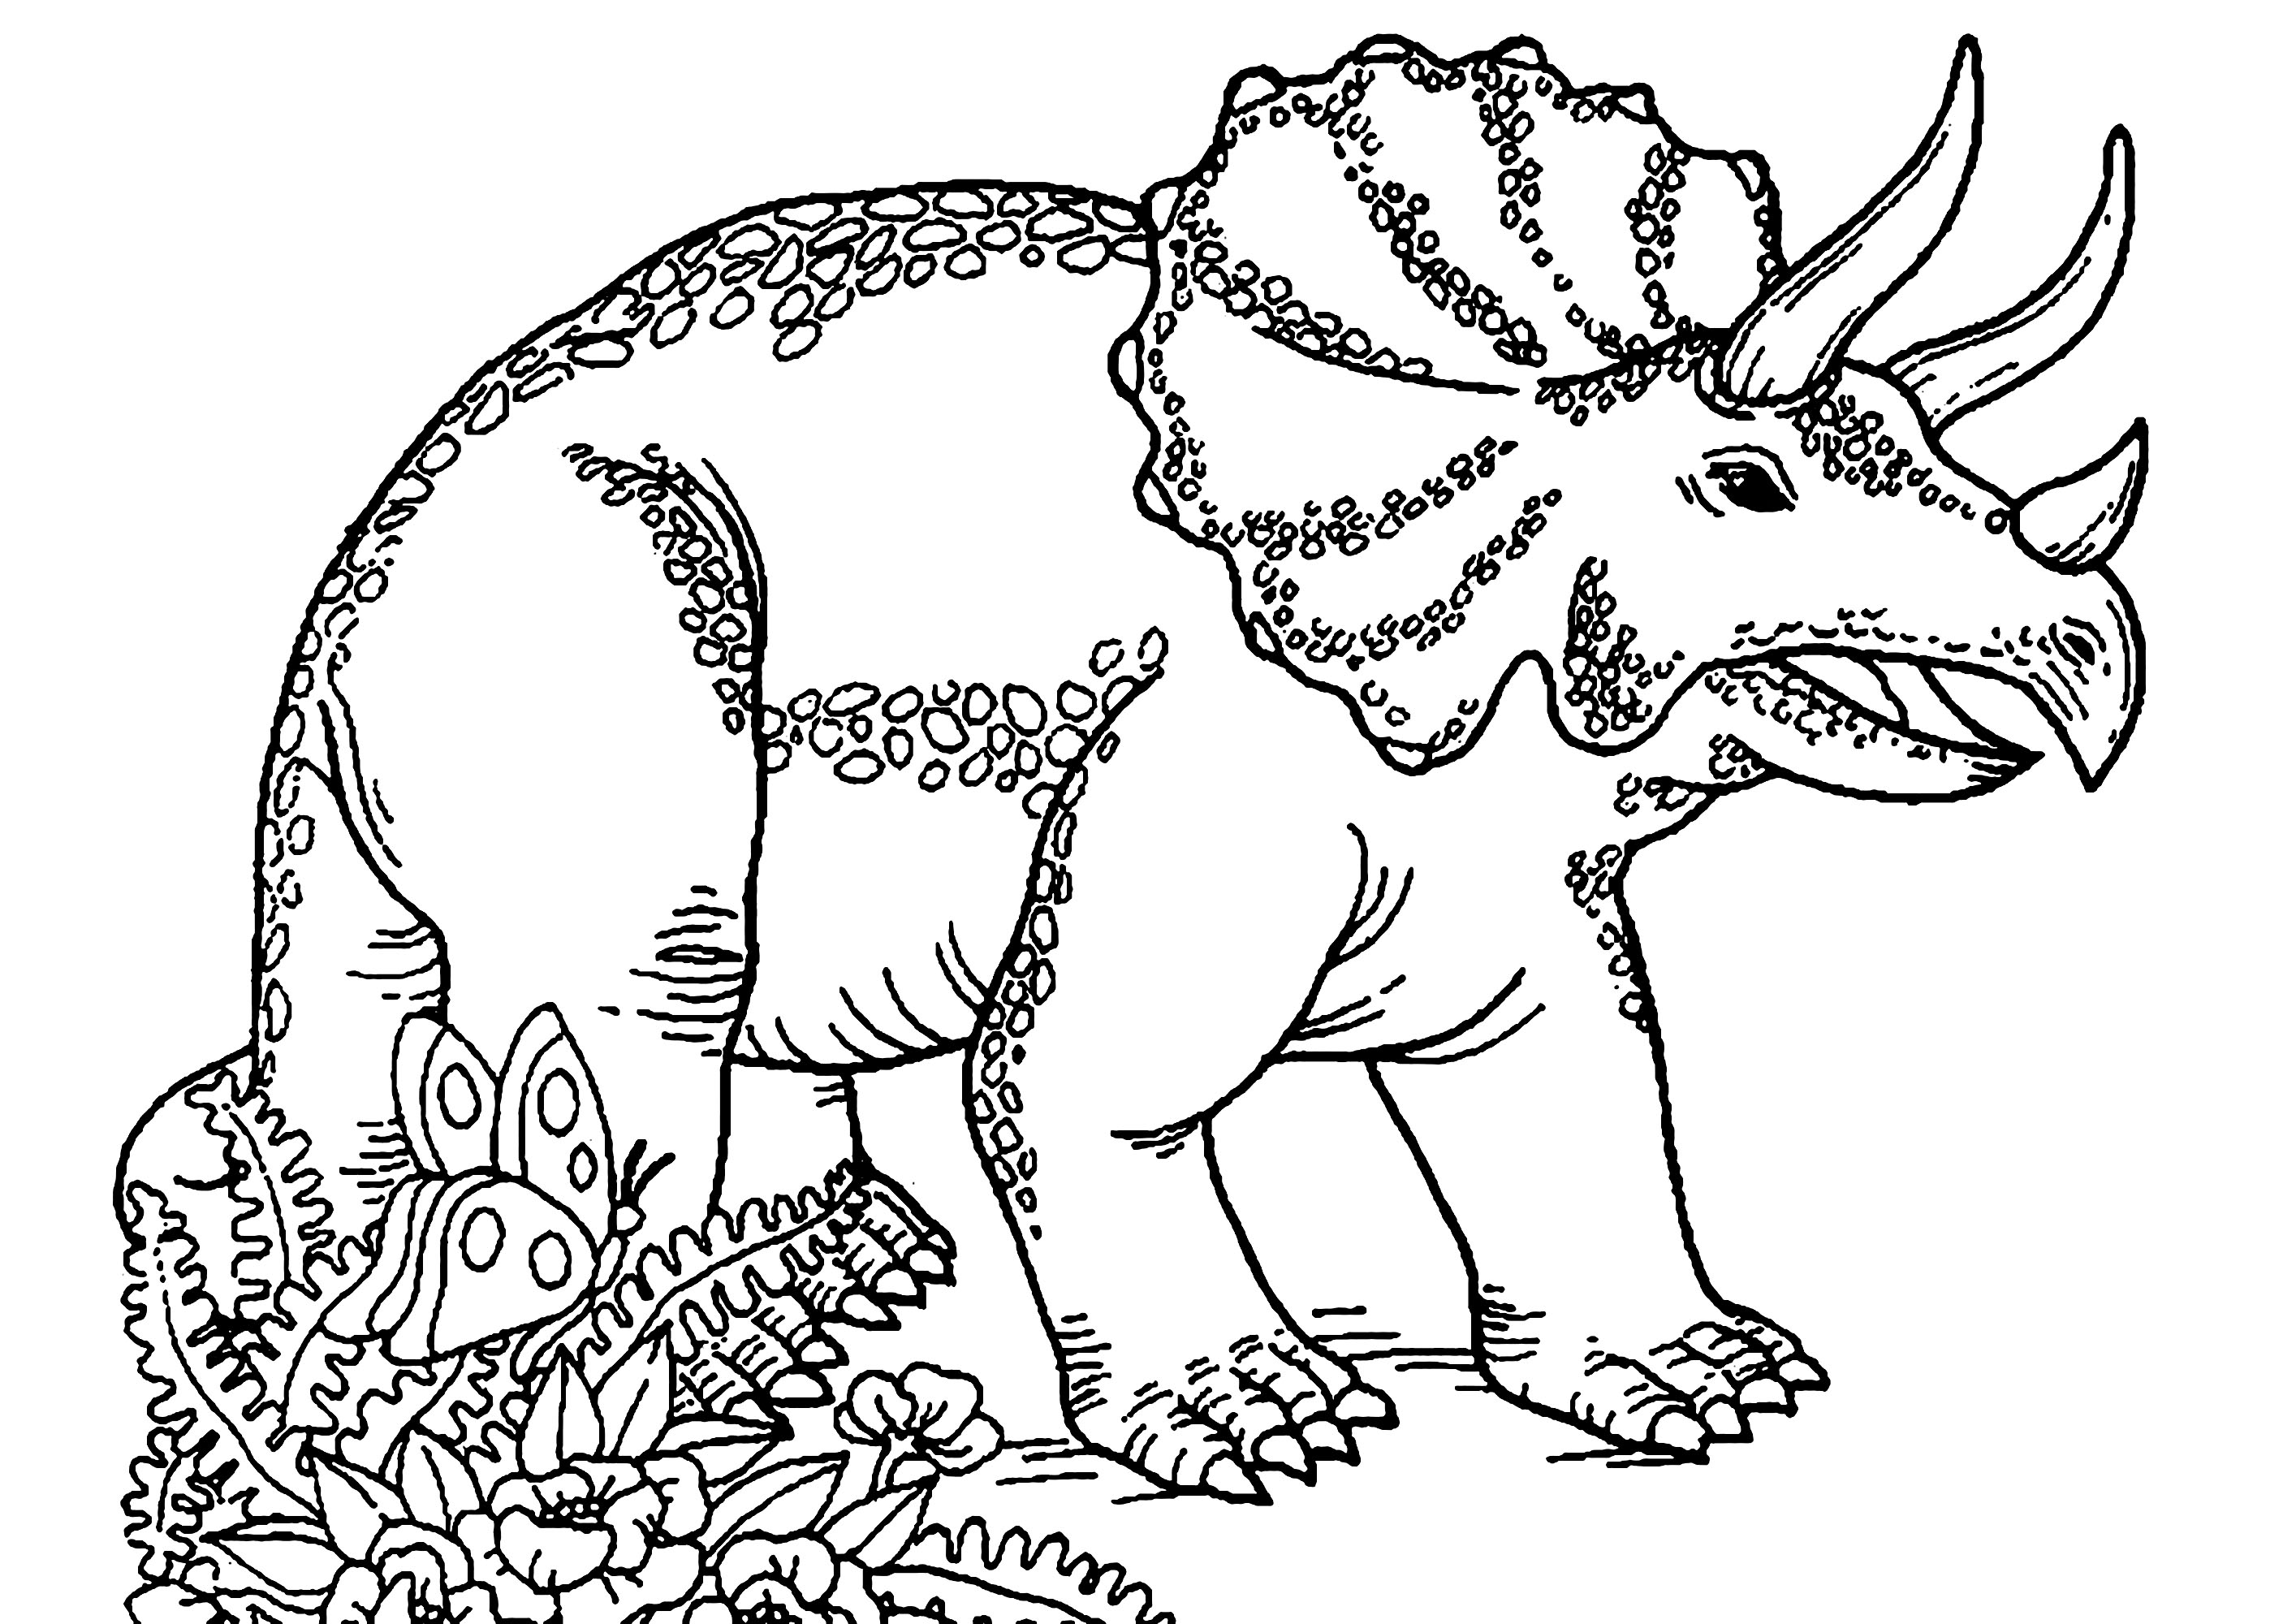 Coloración de un triceratops